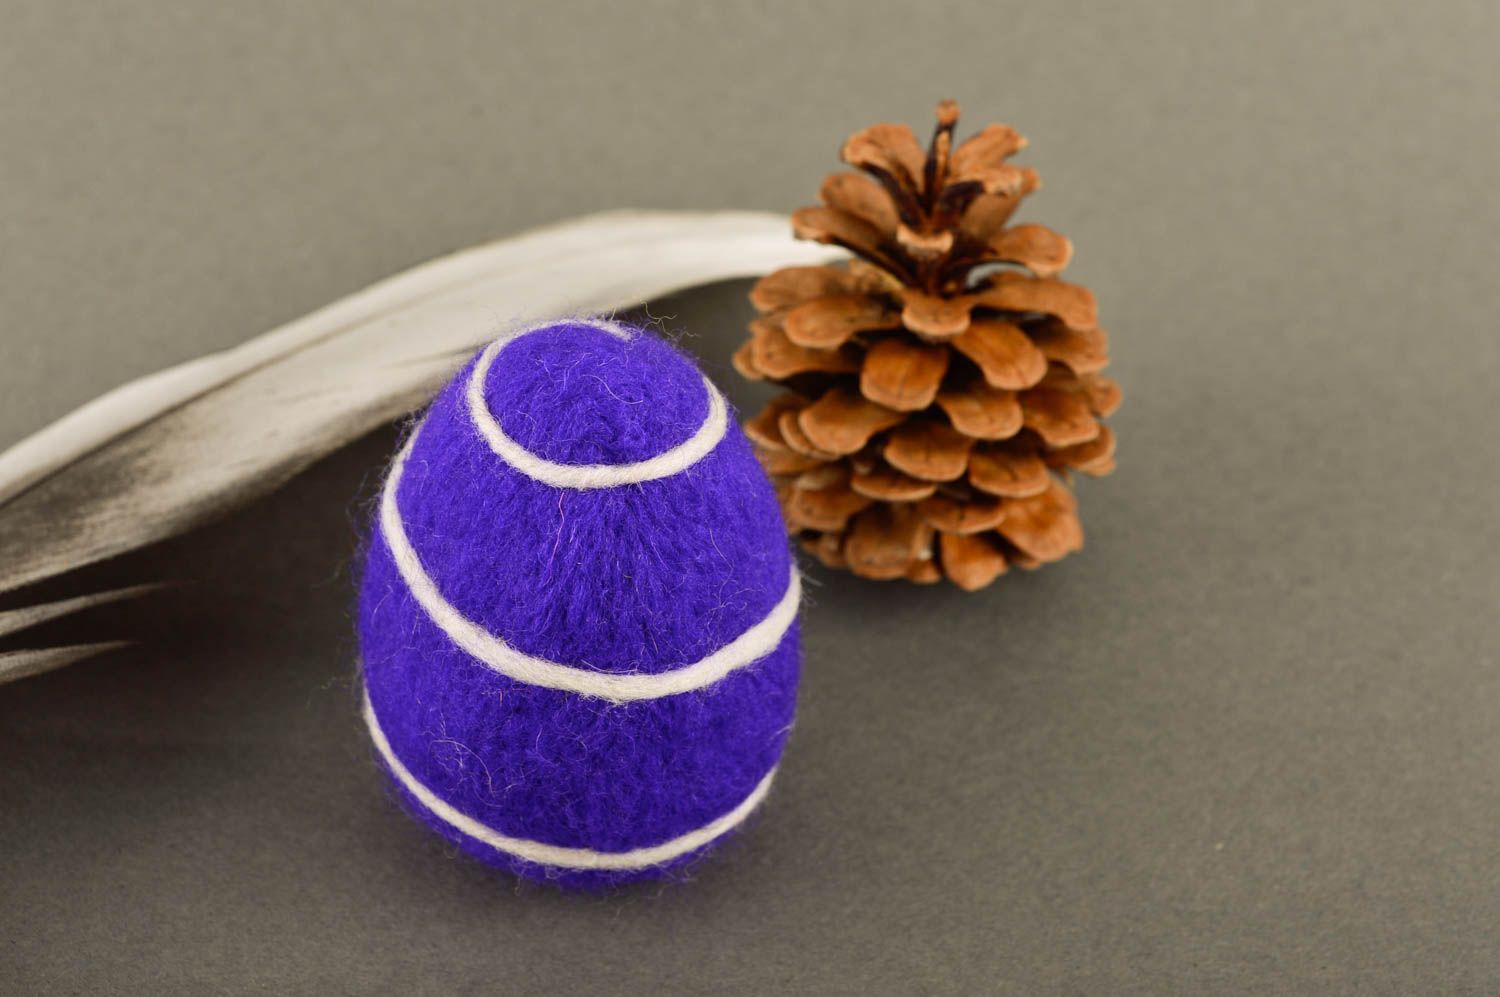 Декоративное яйцо ручной работы игрунка из шерсти валяная игрушка филлетовая фото 1